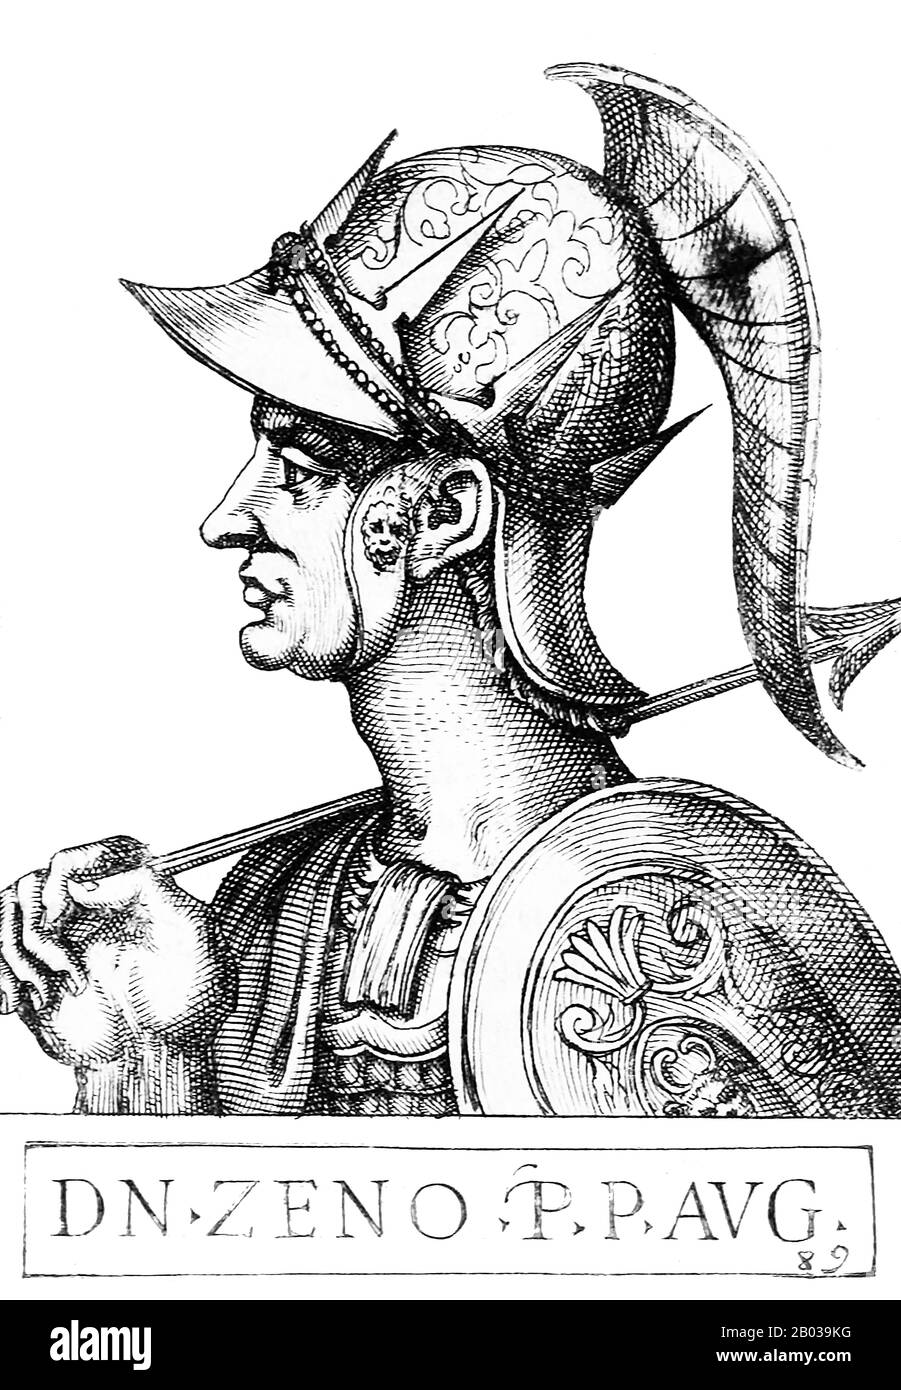 Zeno der Isaurier (425-491), ursprünglich Tarasis Kodisa Rousombladadiotes genannt, war ein isaurischer Offizier, der in der oströmischen Armee diente. Er wurde ein Verbündeter von Kaiser Leo, heiratete seine Tochter Ariadne und half ihm, den Alan General Aspar, der großen Einfluss in Constantine hatte, zu ermorden. Er nahm den Namen Zeno an, offenbar von einem anderen berühmten isaurischen Offizier, der gegen Attila gekämpft hatte, um sich für die römische Hierarchie akzeptabler zu machen. Als Leo 474 starb, wurde Zenos Sohn Leo II. Kaiser, aber da er damals nur sieben war, war er überzeugt, seinen Vater als Mitkaiser zu benennen. Ze Stockfoto